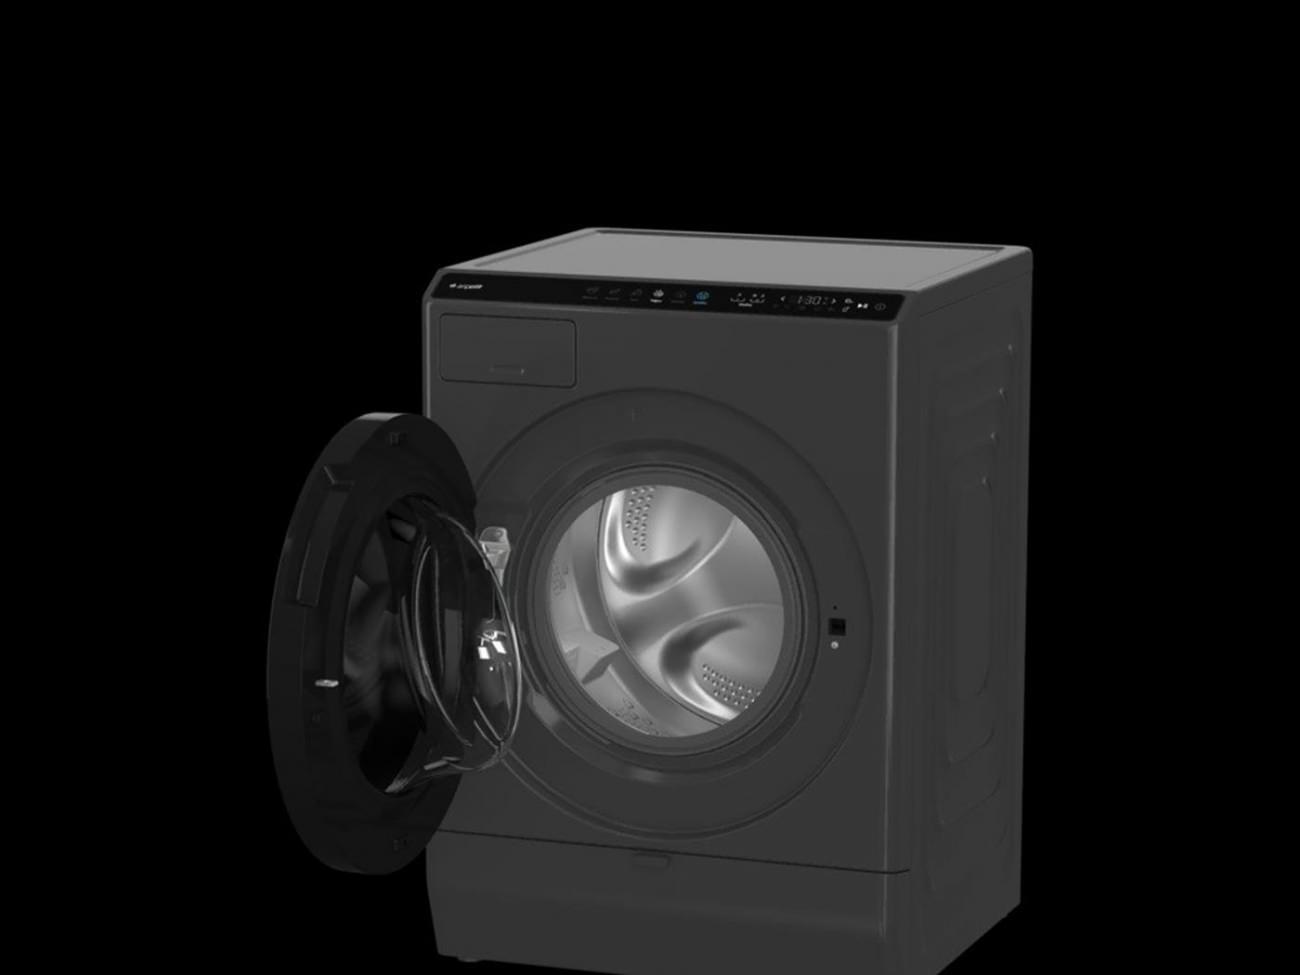 Arçelik Neo otonom çamaşır makinesi